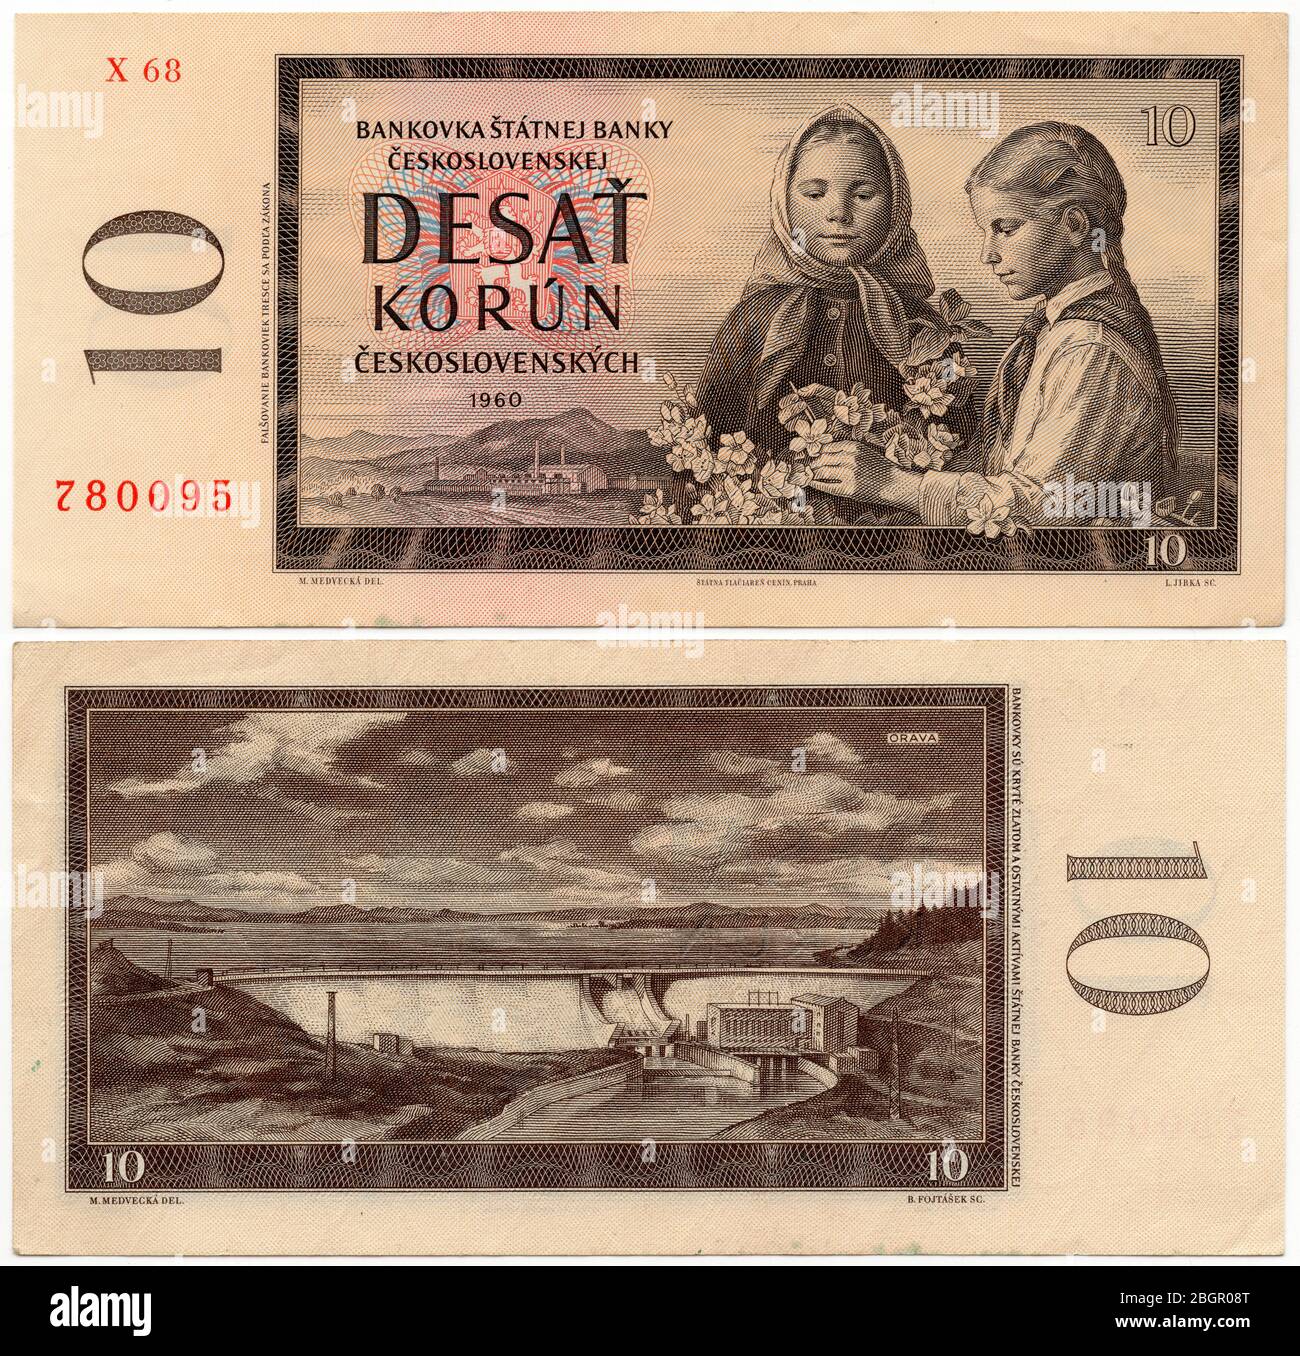 10 Tschechoslowakische Krone Banknote (1960) ausgestellt in der Tschechoslowakischen Sozialistischen Republik. Die Banknote wurde von der slowakischen Grafikerin Mária Medvecká entworfen. Der Orava-Stausee in der Slowakei ist im Recto dargestellt. Stockfoto